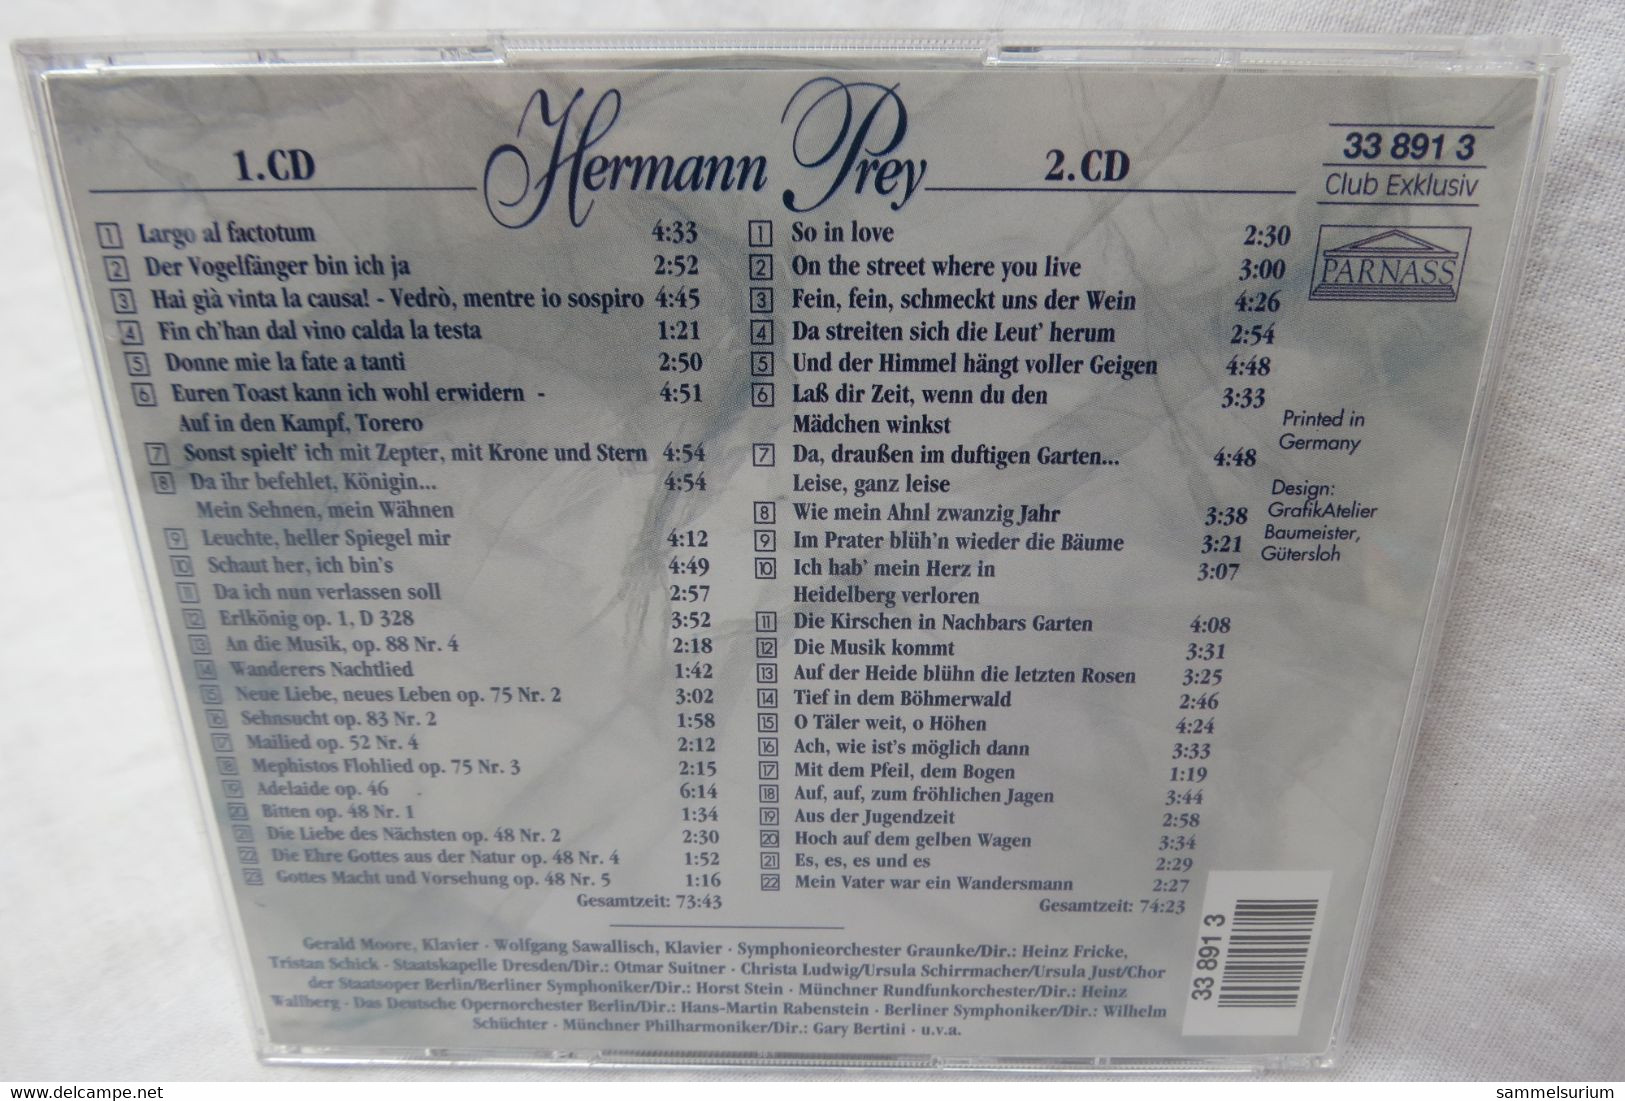 2 CDs "Hermann Prey" Ein Leben Für Die Musik, Von Der Oper Bis Zum Volkslied - Oper & Operette